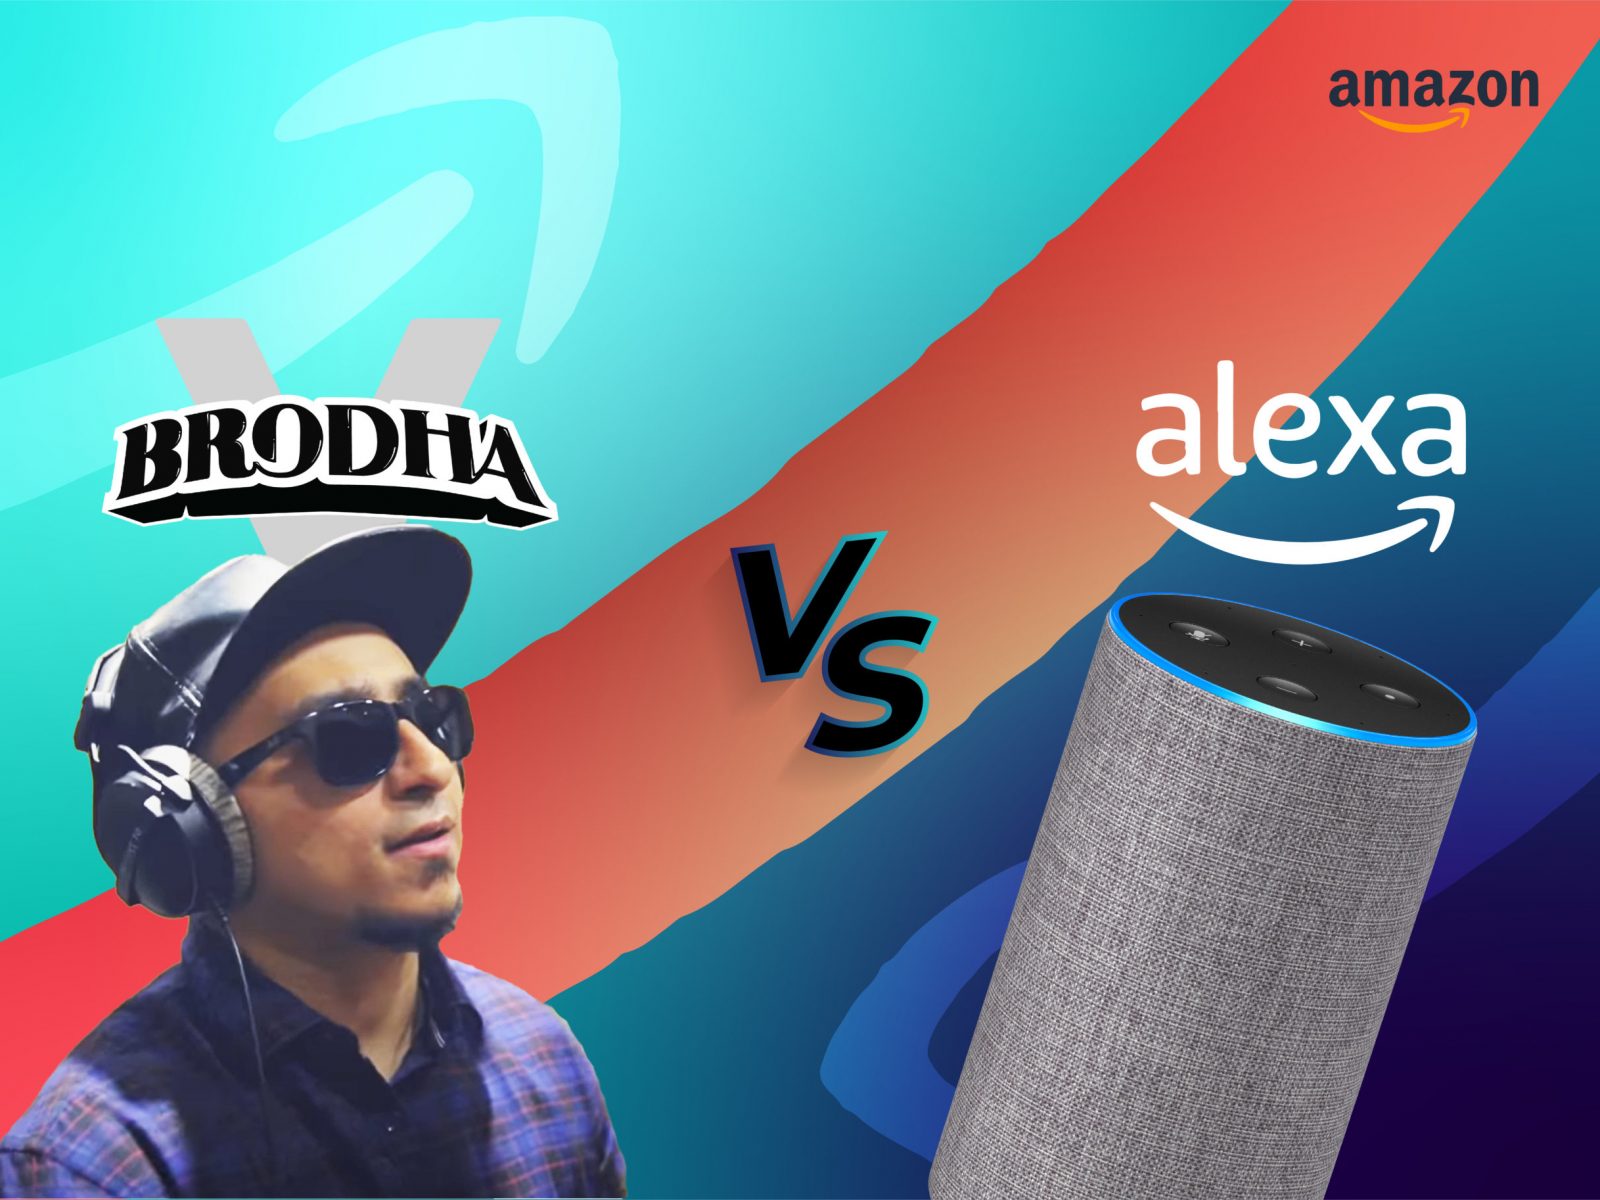 Brodha V vs Alexa-02